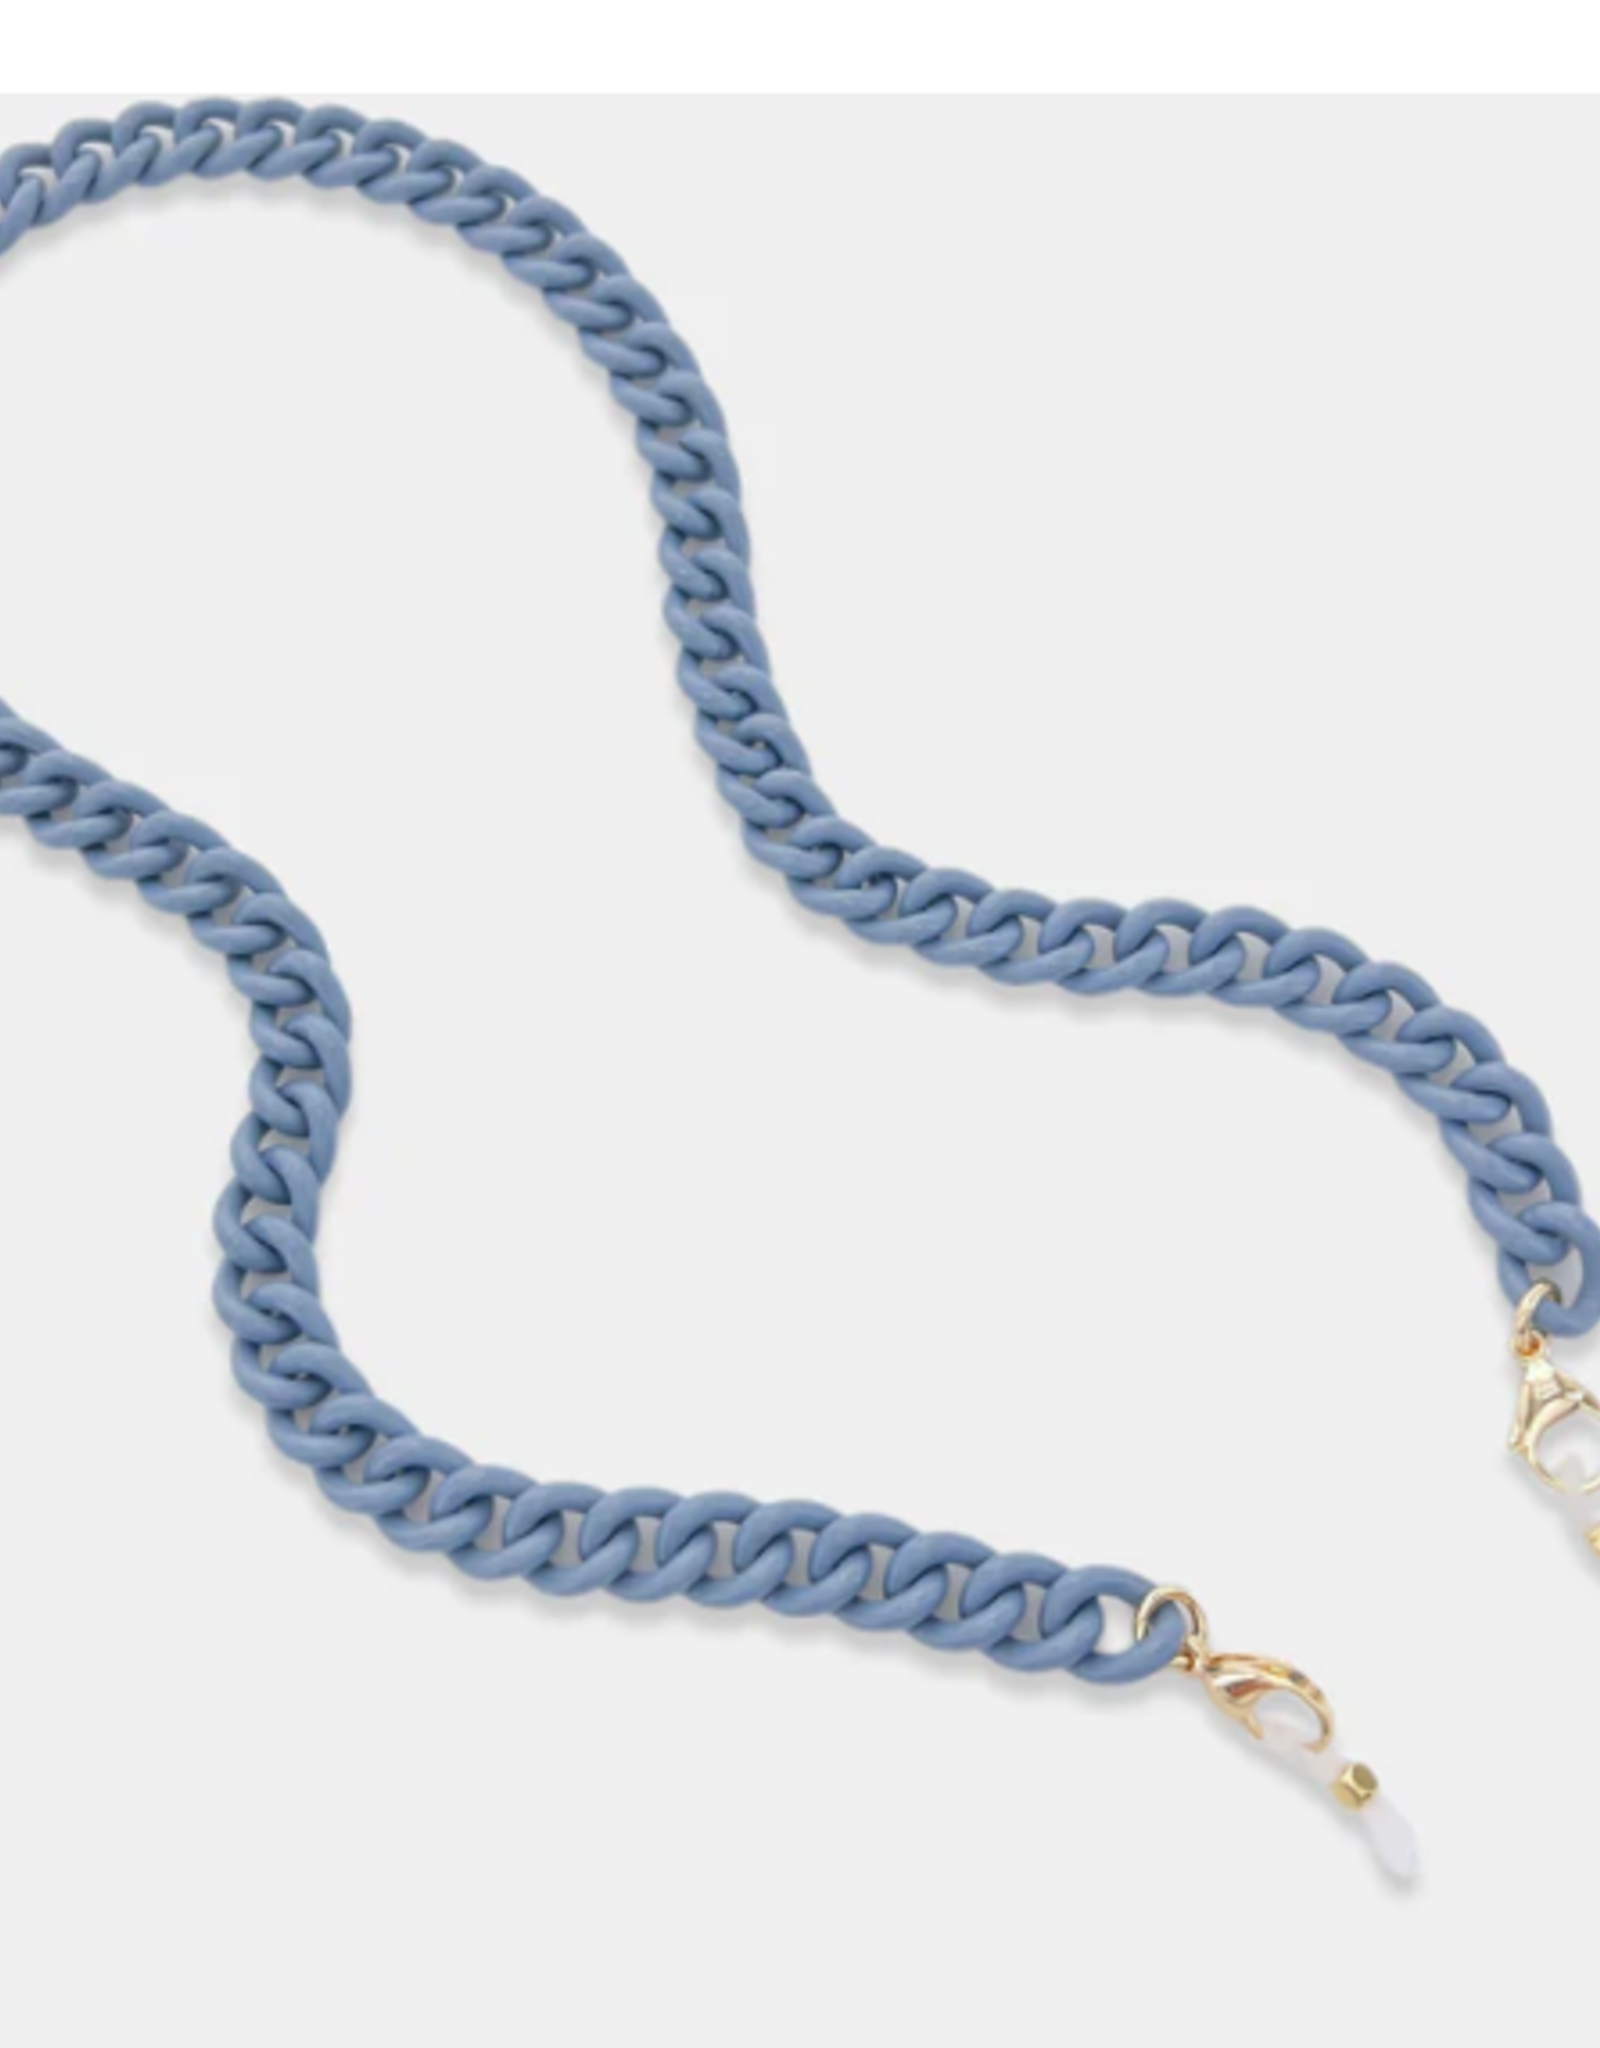 Denim Enamel Chunky  Chain Necklace